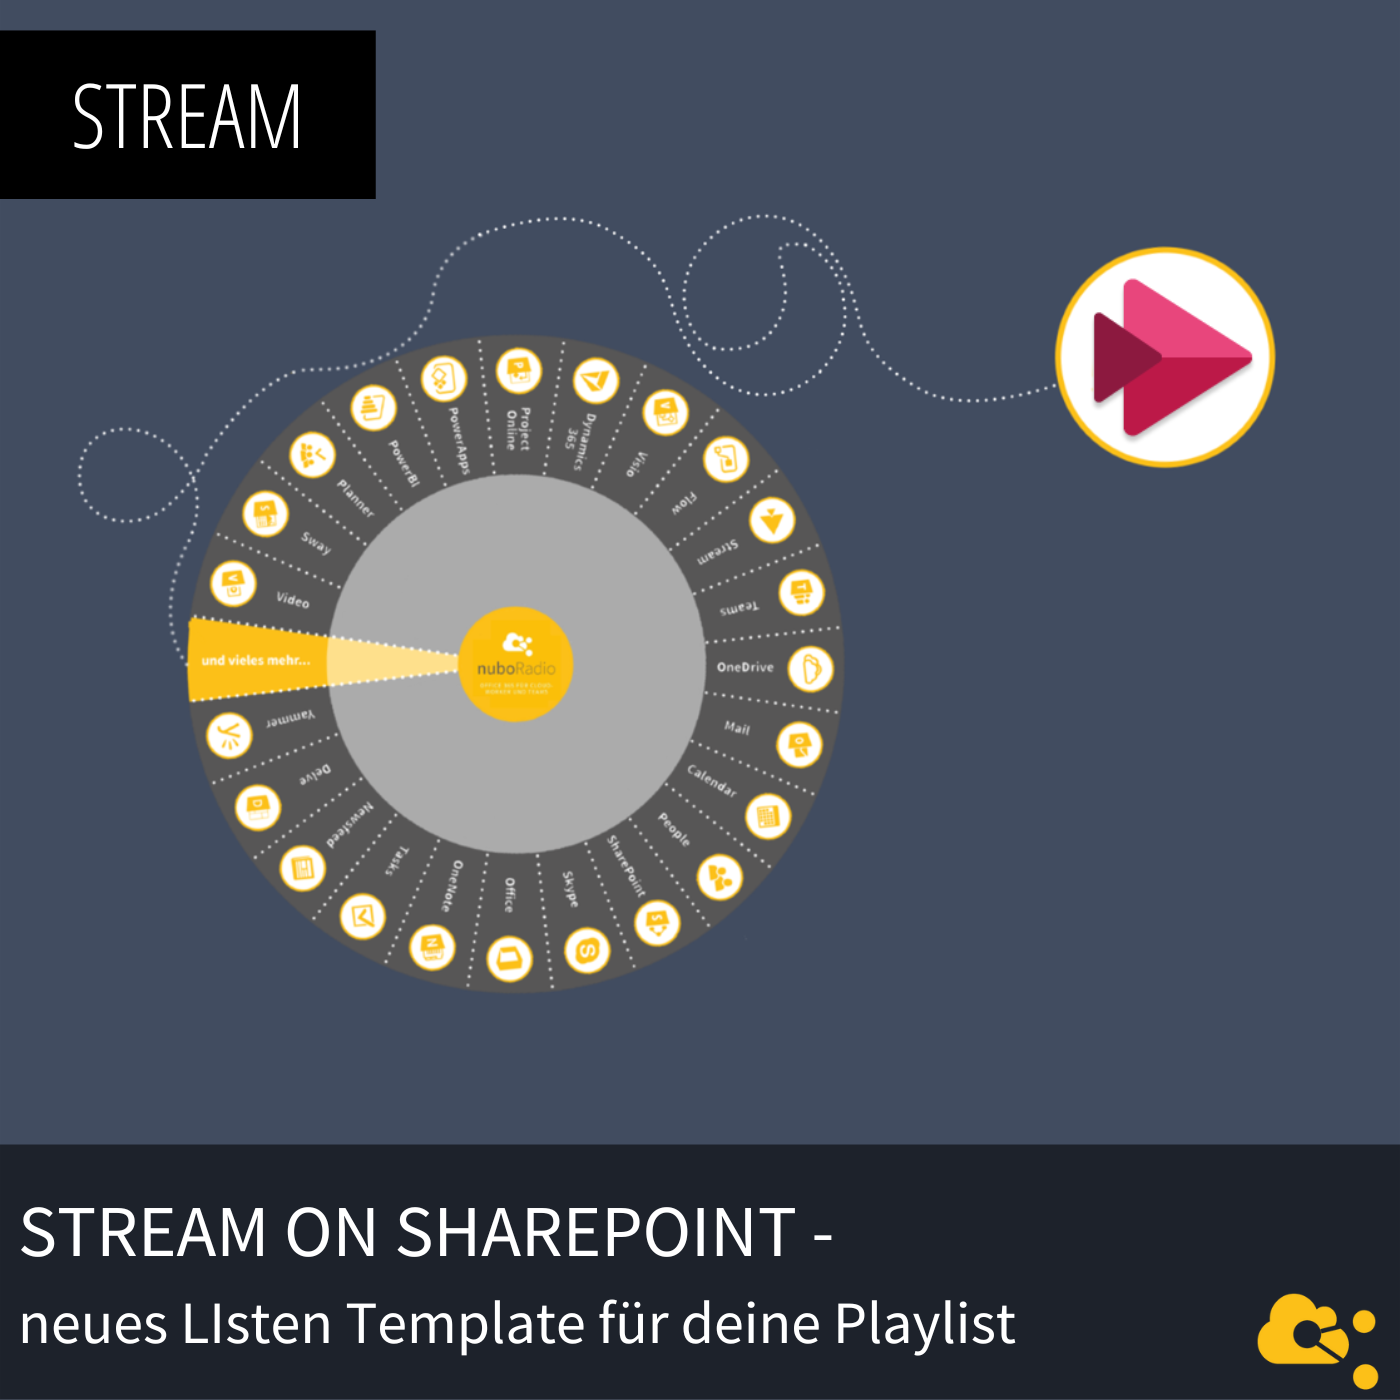 Stream in SharePoint - neues Listen Template für deine Playlist